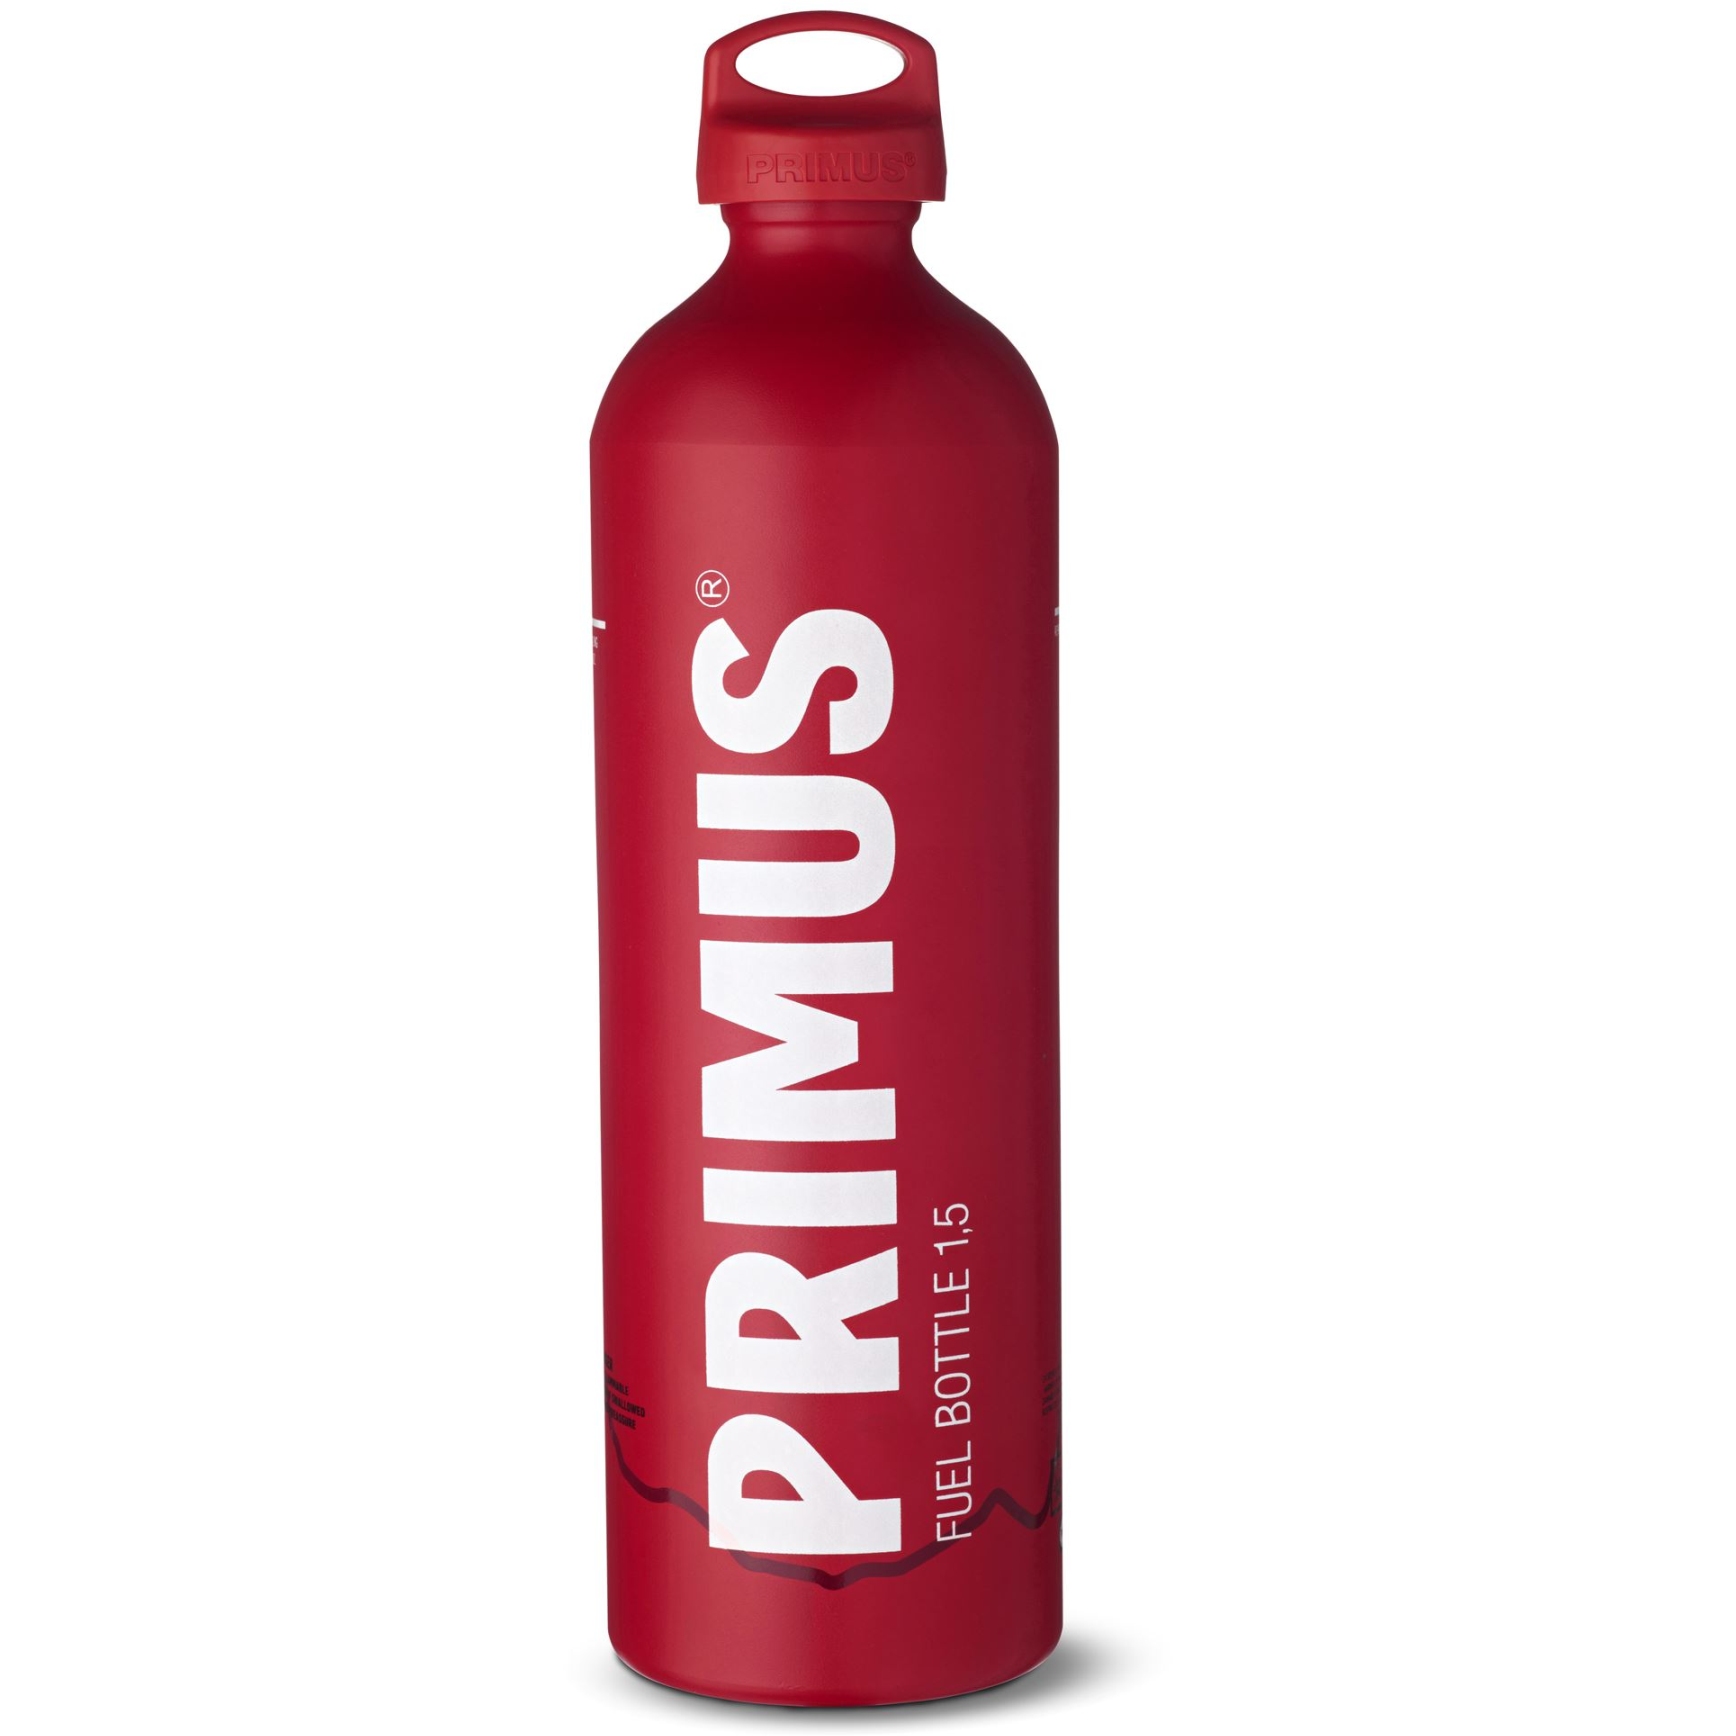 Produktbild von Primus Fuel Bottle 1.5 L Brennstoffflasche